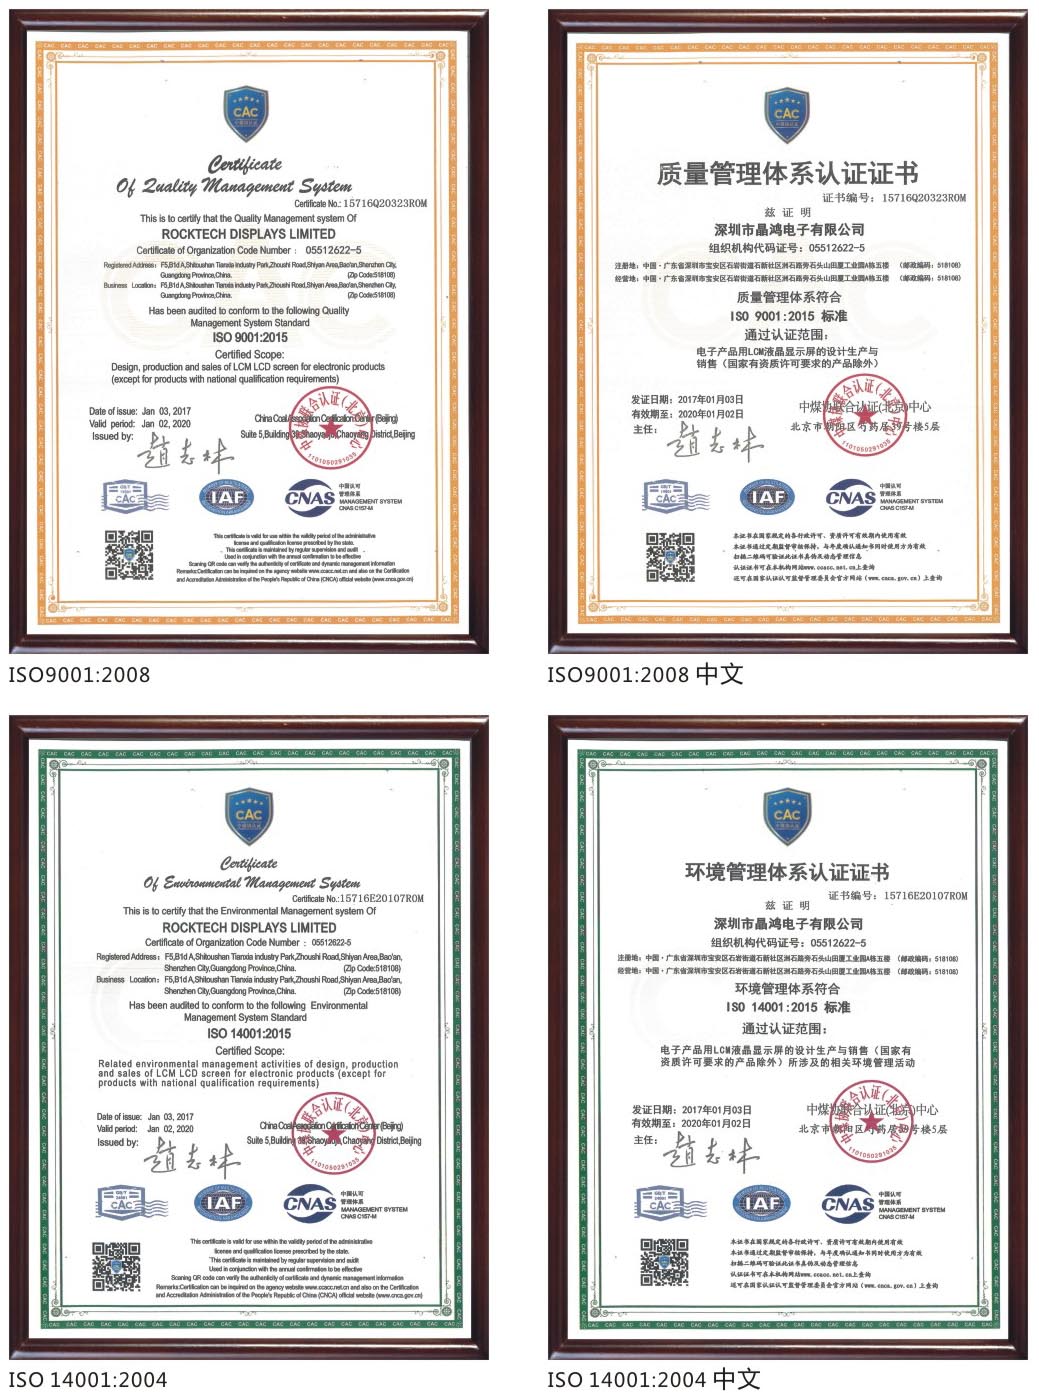 2013年通过ISO9001与IOS14001认证